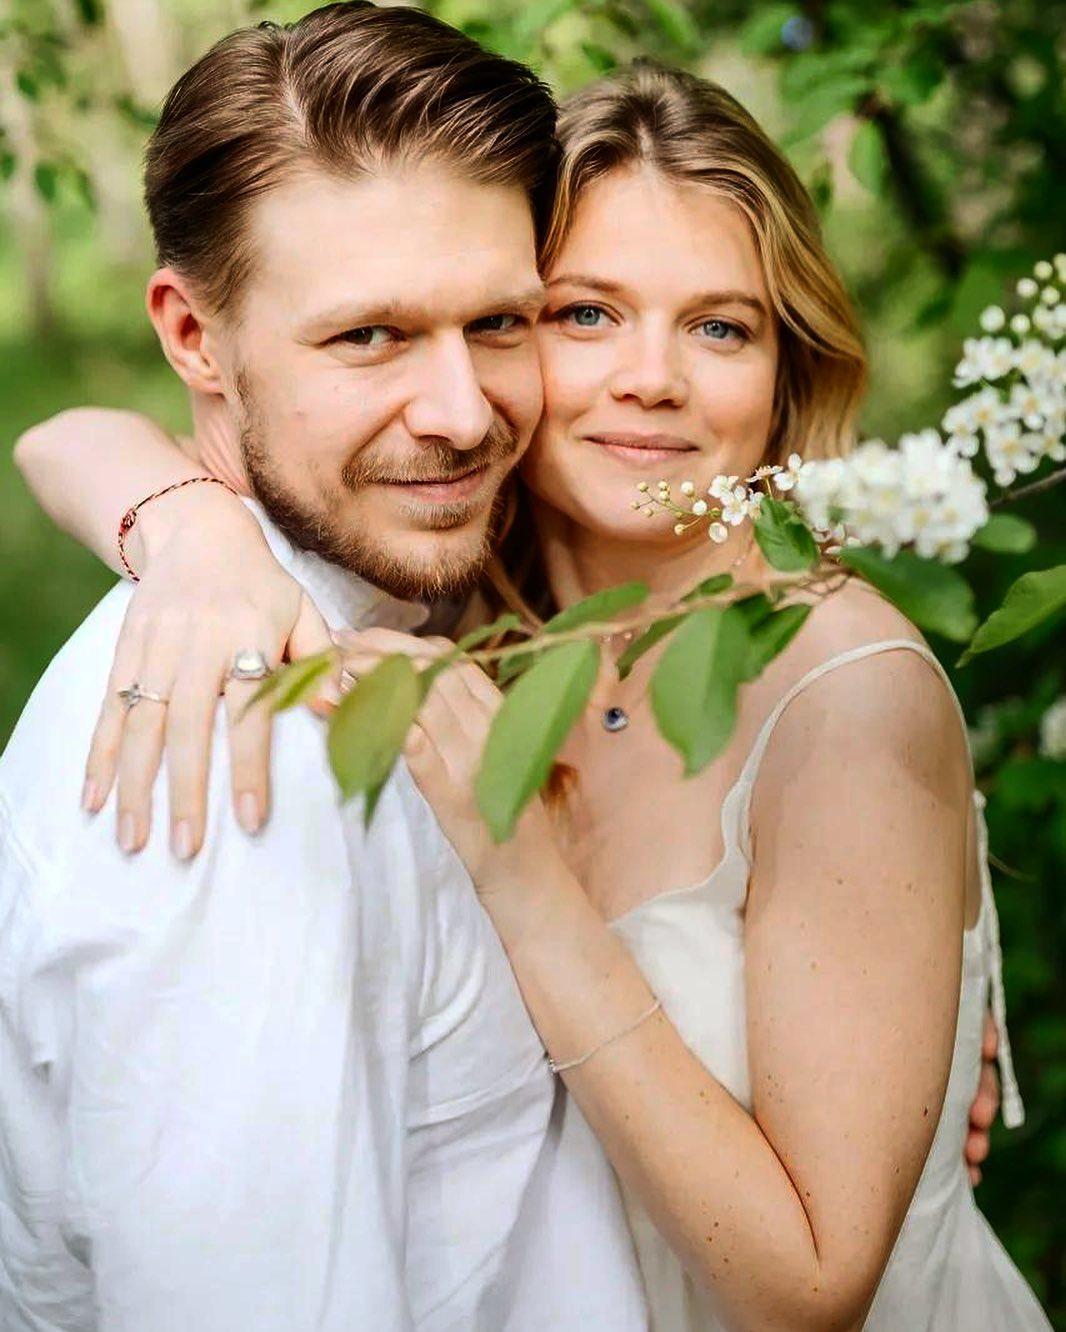 Никита Ефремов и Мария Ивакова сообщили о расставании после двух лет отношений